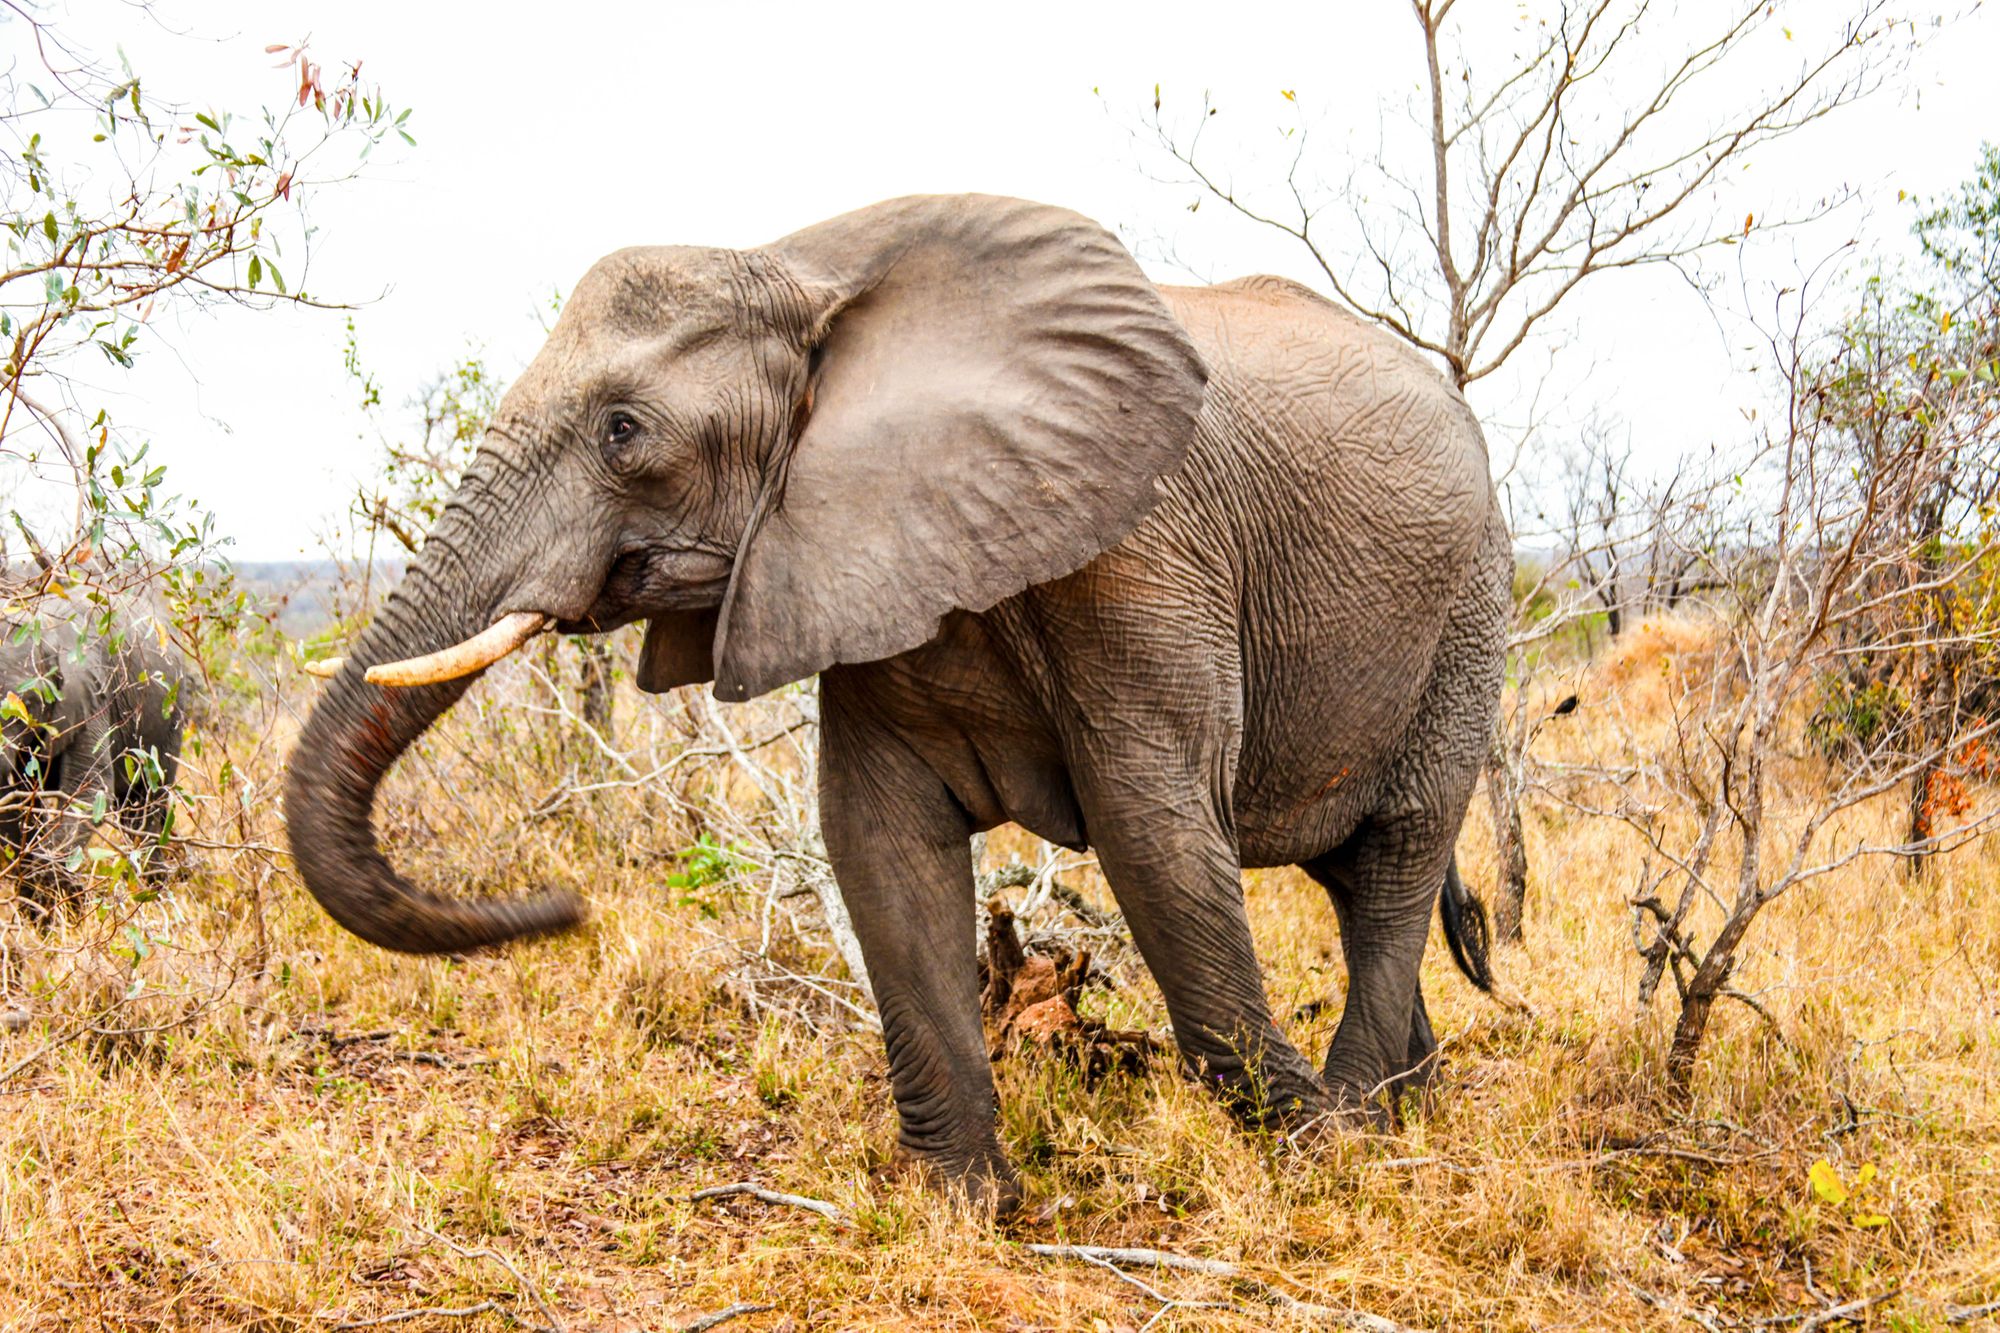 Samice slona afrického se rodí stále častěji bez klů, může za to řádění pytláků